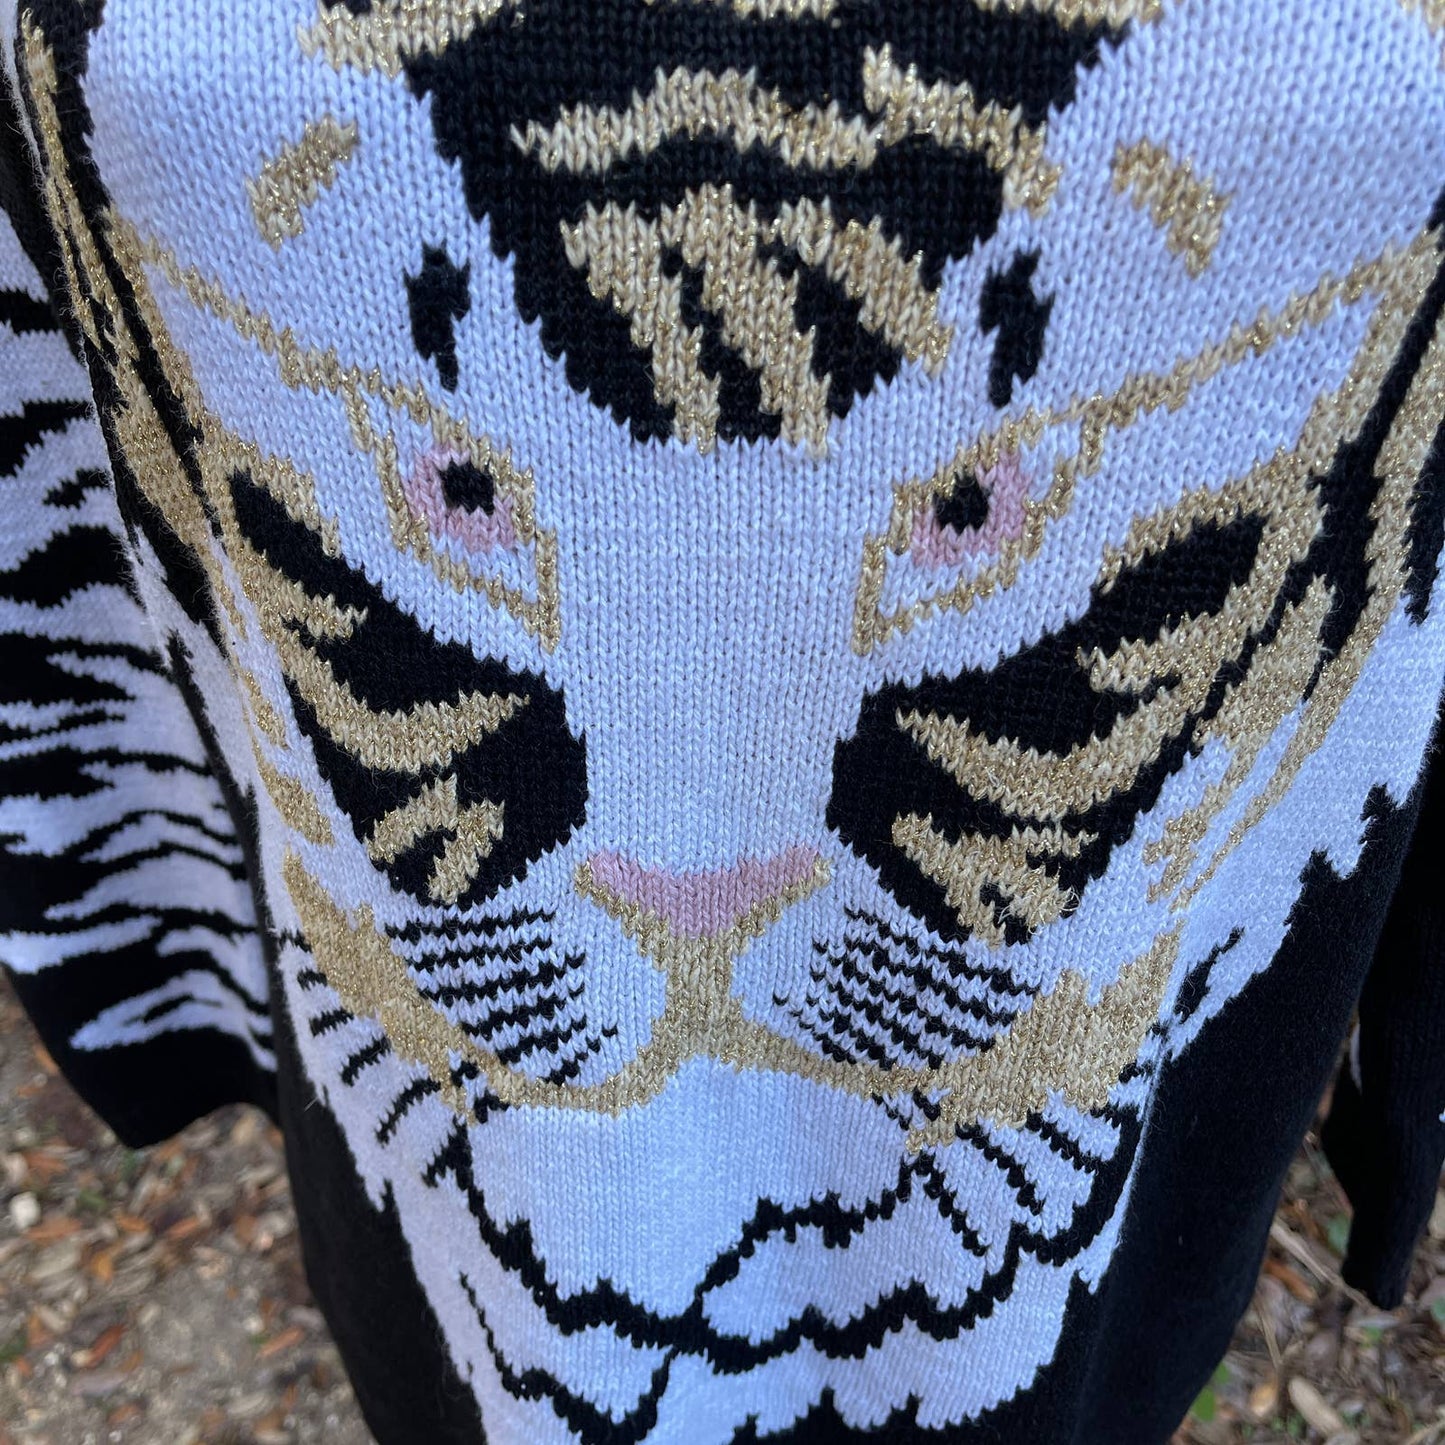 Cervelle Black White Gold Tiger Sweater Stripes Oversized 80s Vtg Size M